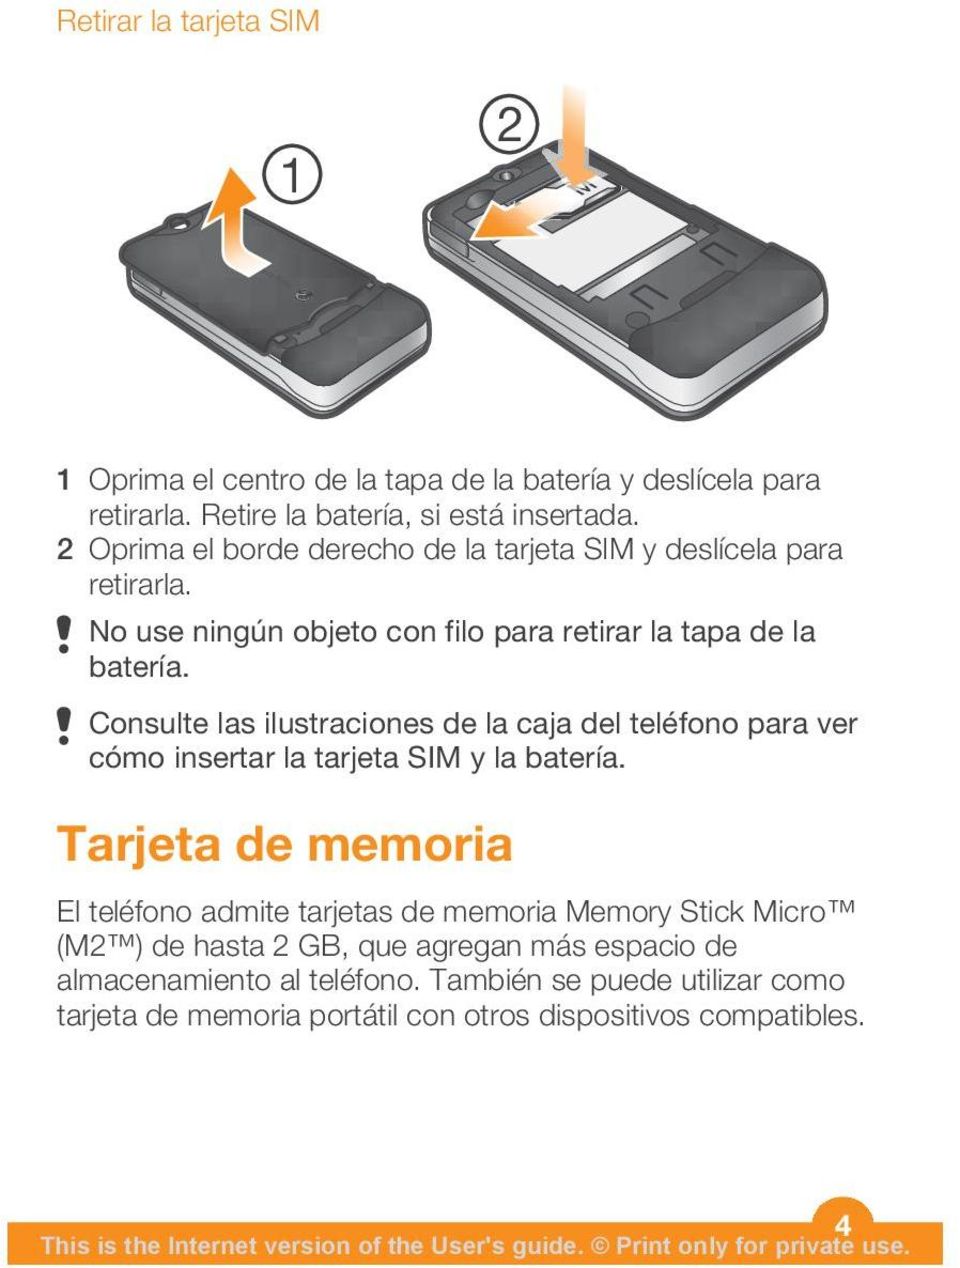 Consulte las ilustraciones de la caja del teléfono para ver cómo insertar la tarjeta SIM y la batería.